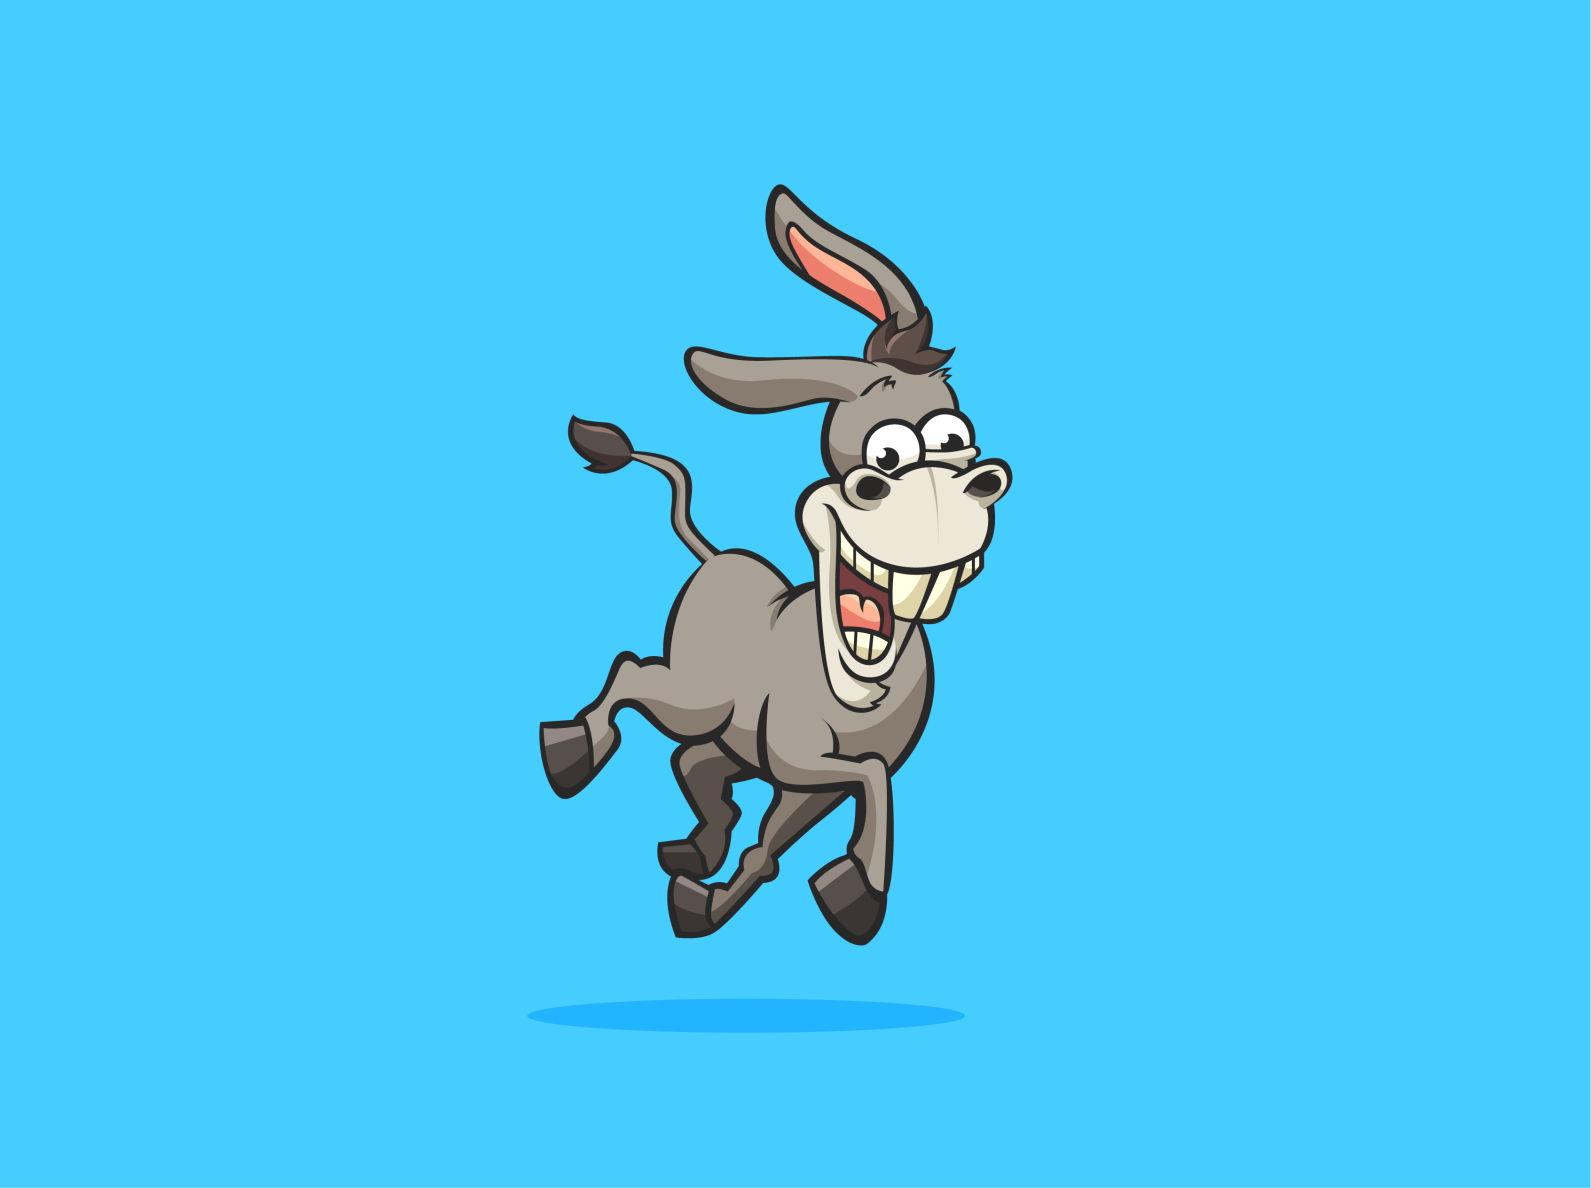 Funny goofy donkey cartoon character by Muhammad Fadhel on Dribbble